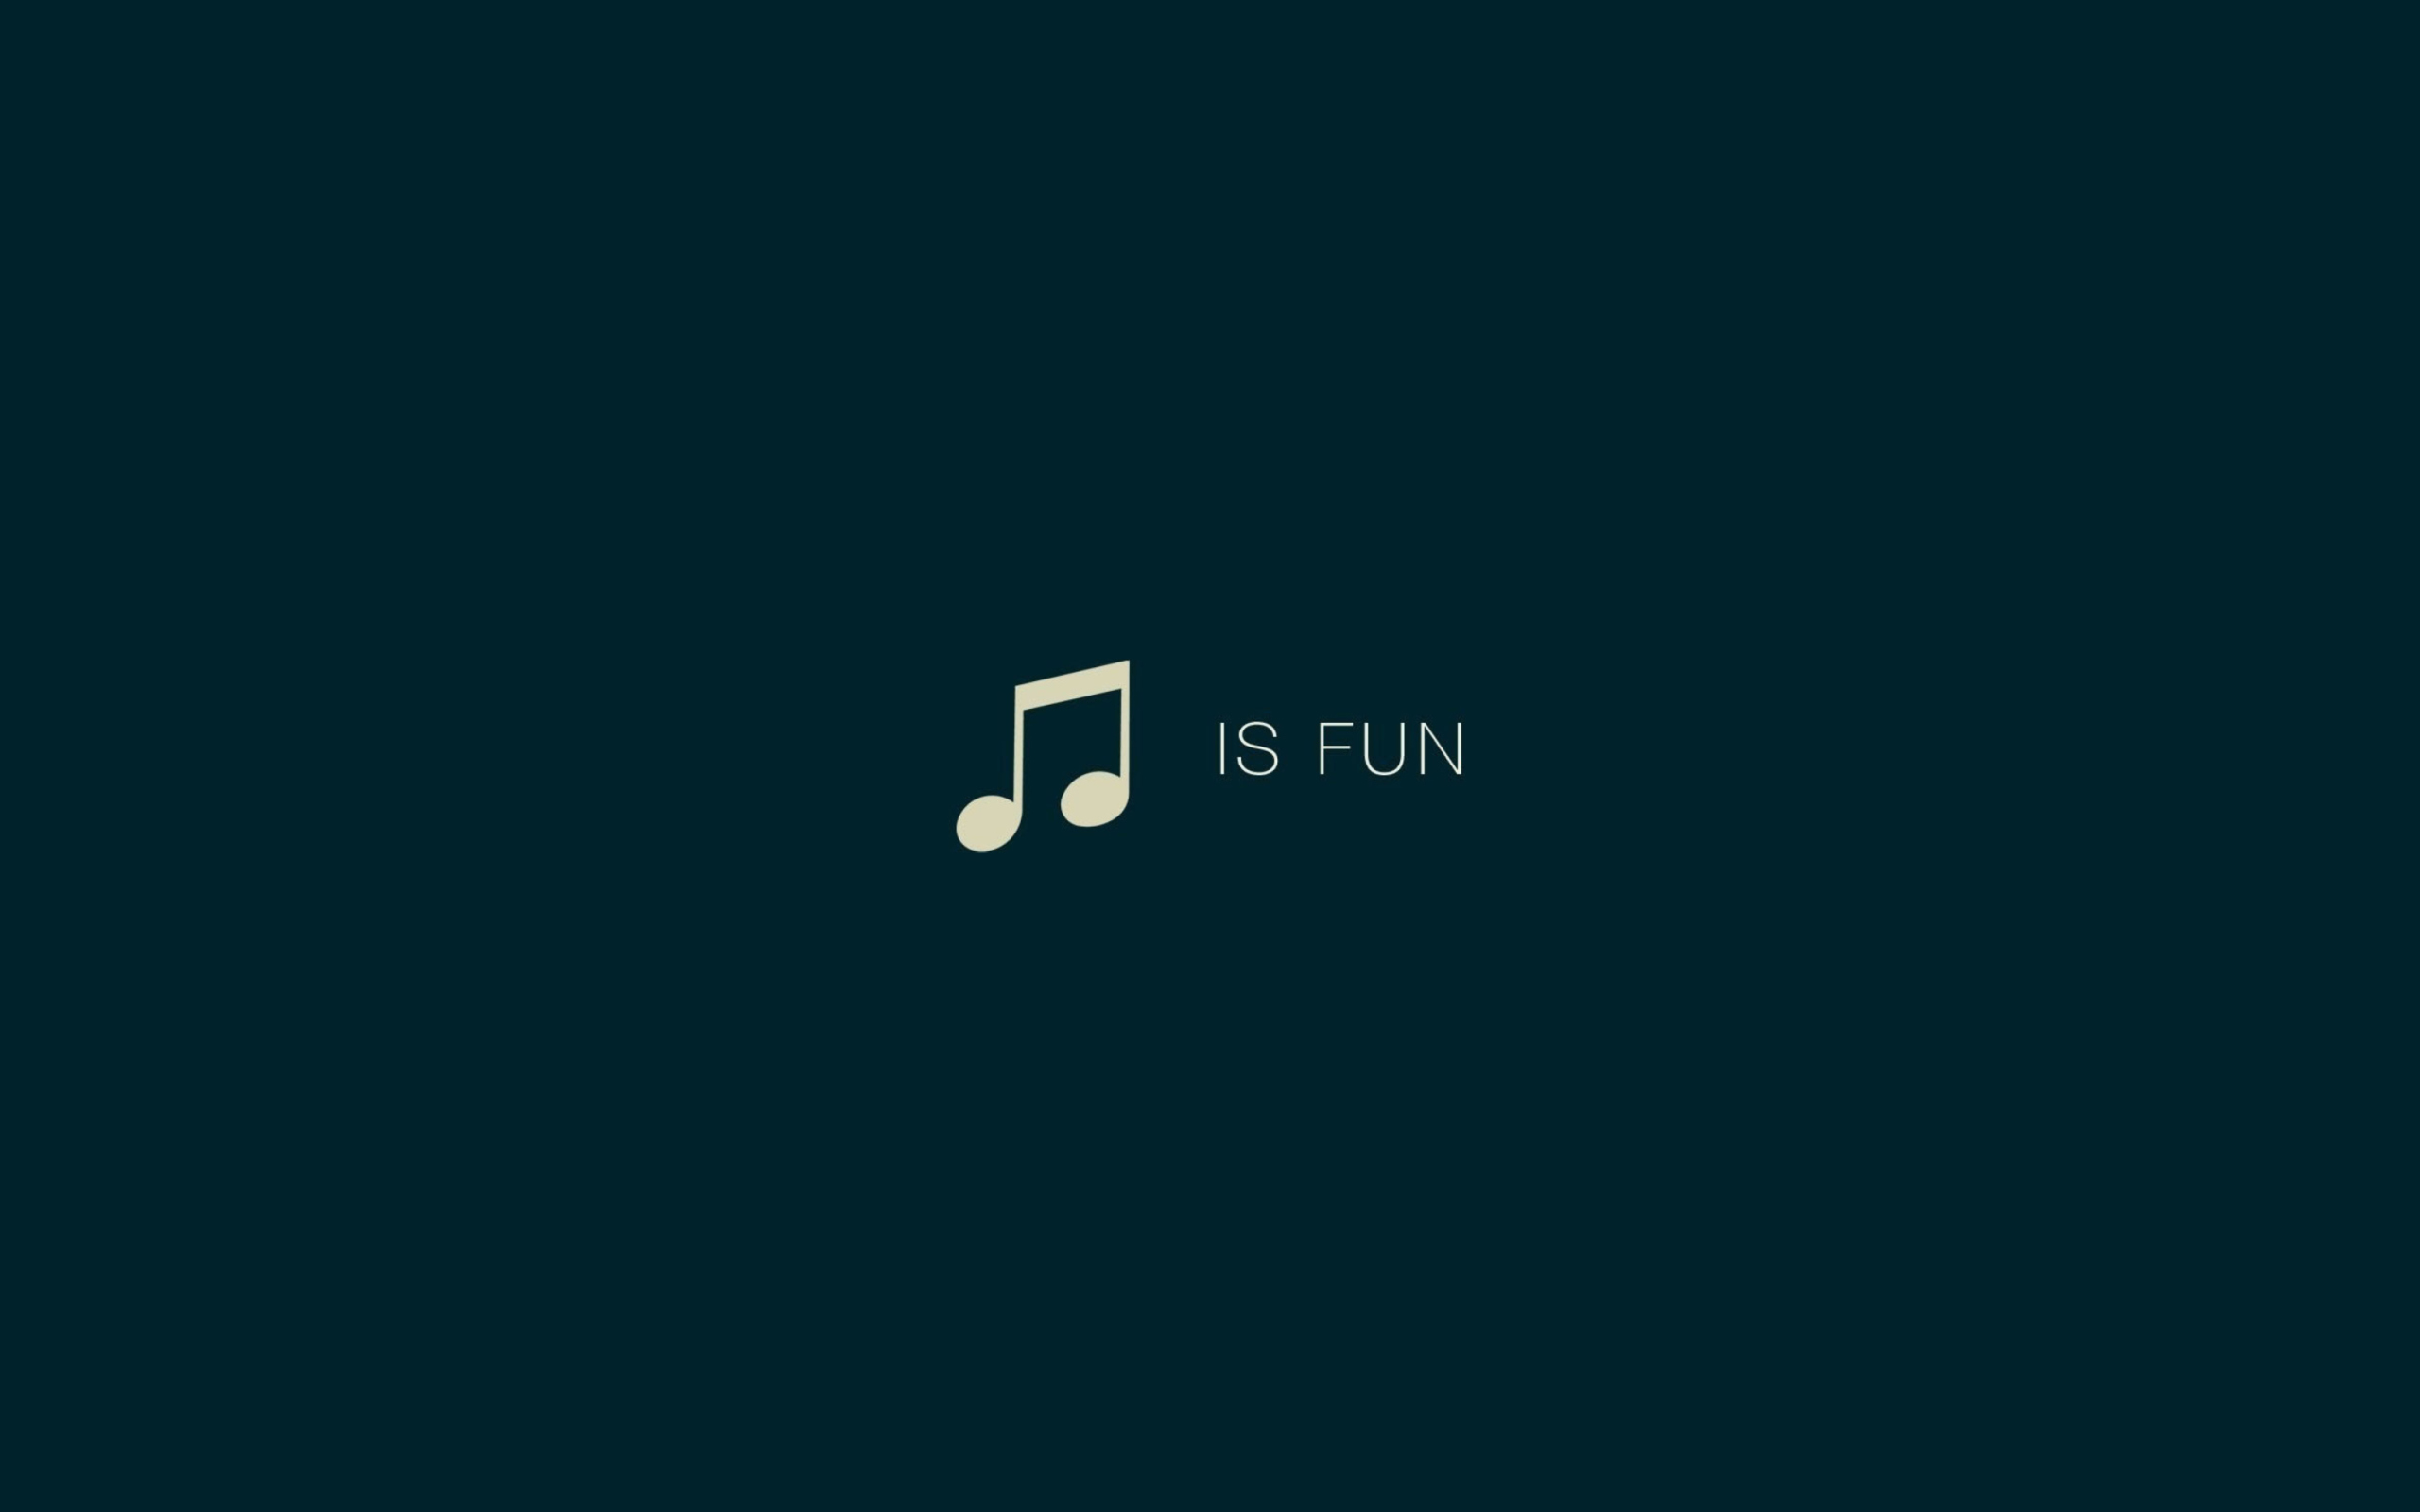 Das Music Is Fun Wallpaper 2560x1600